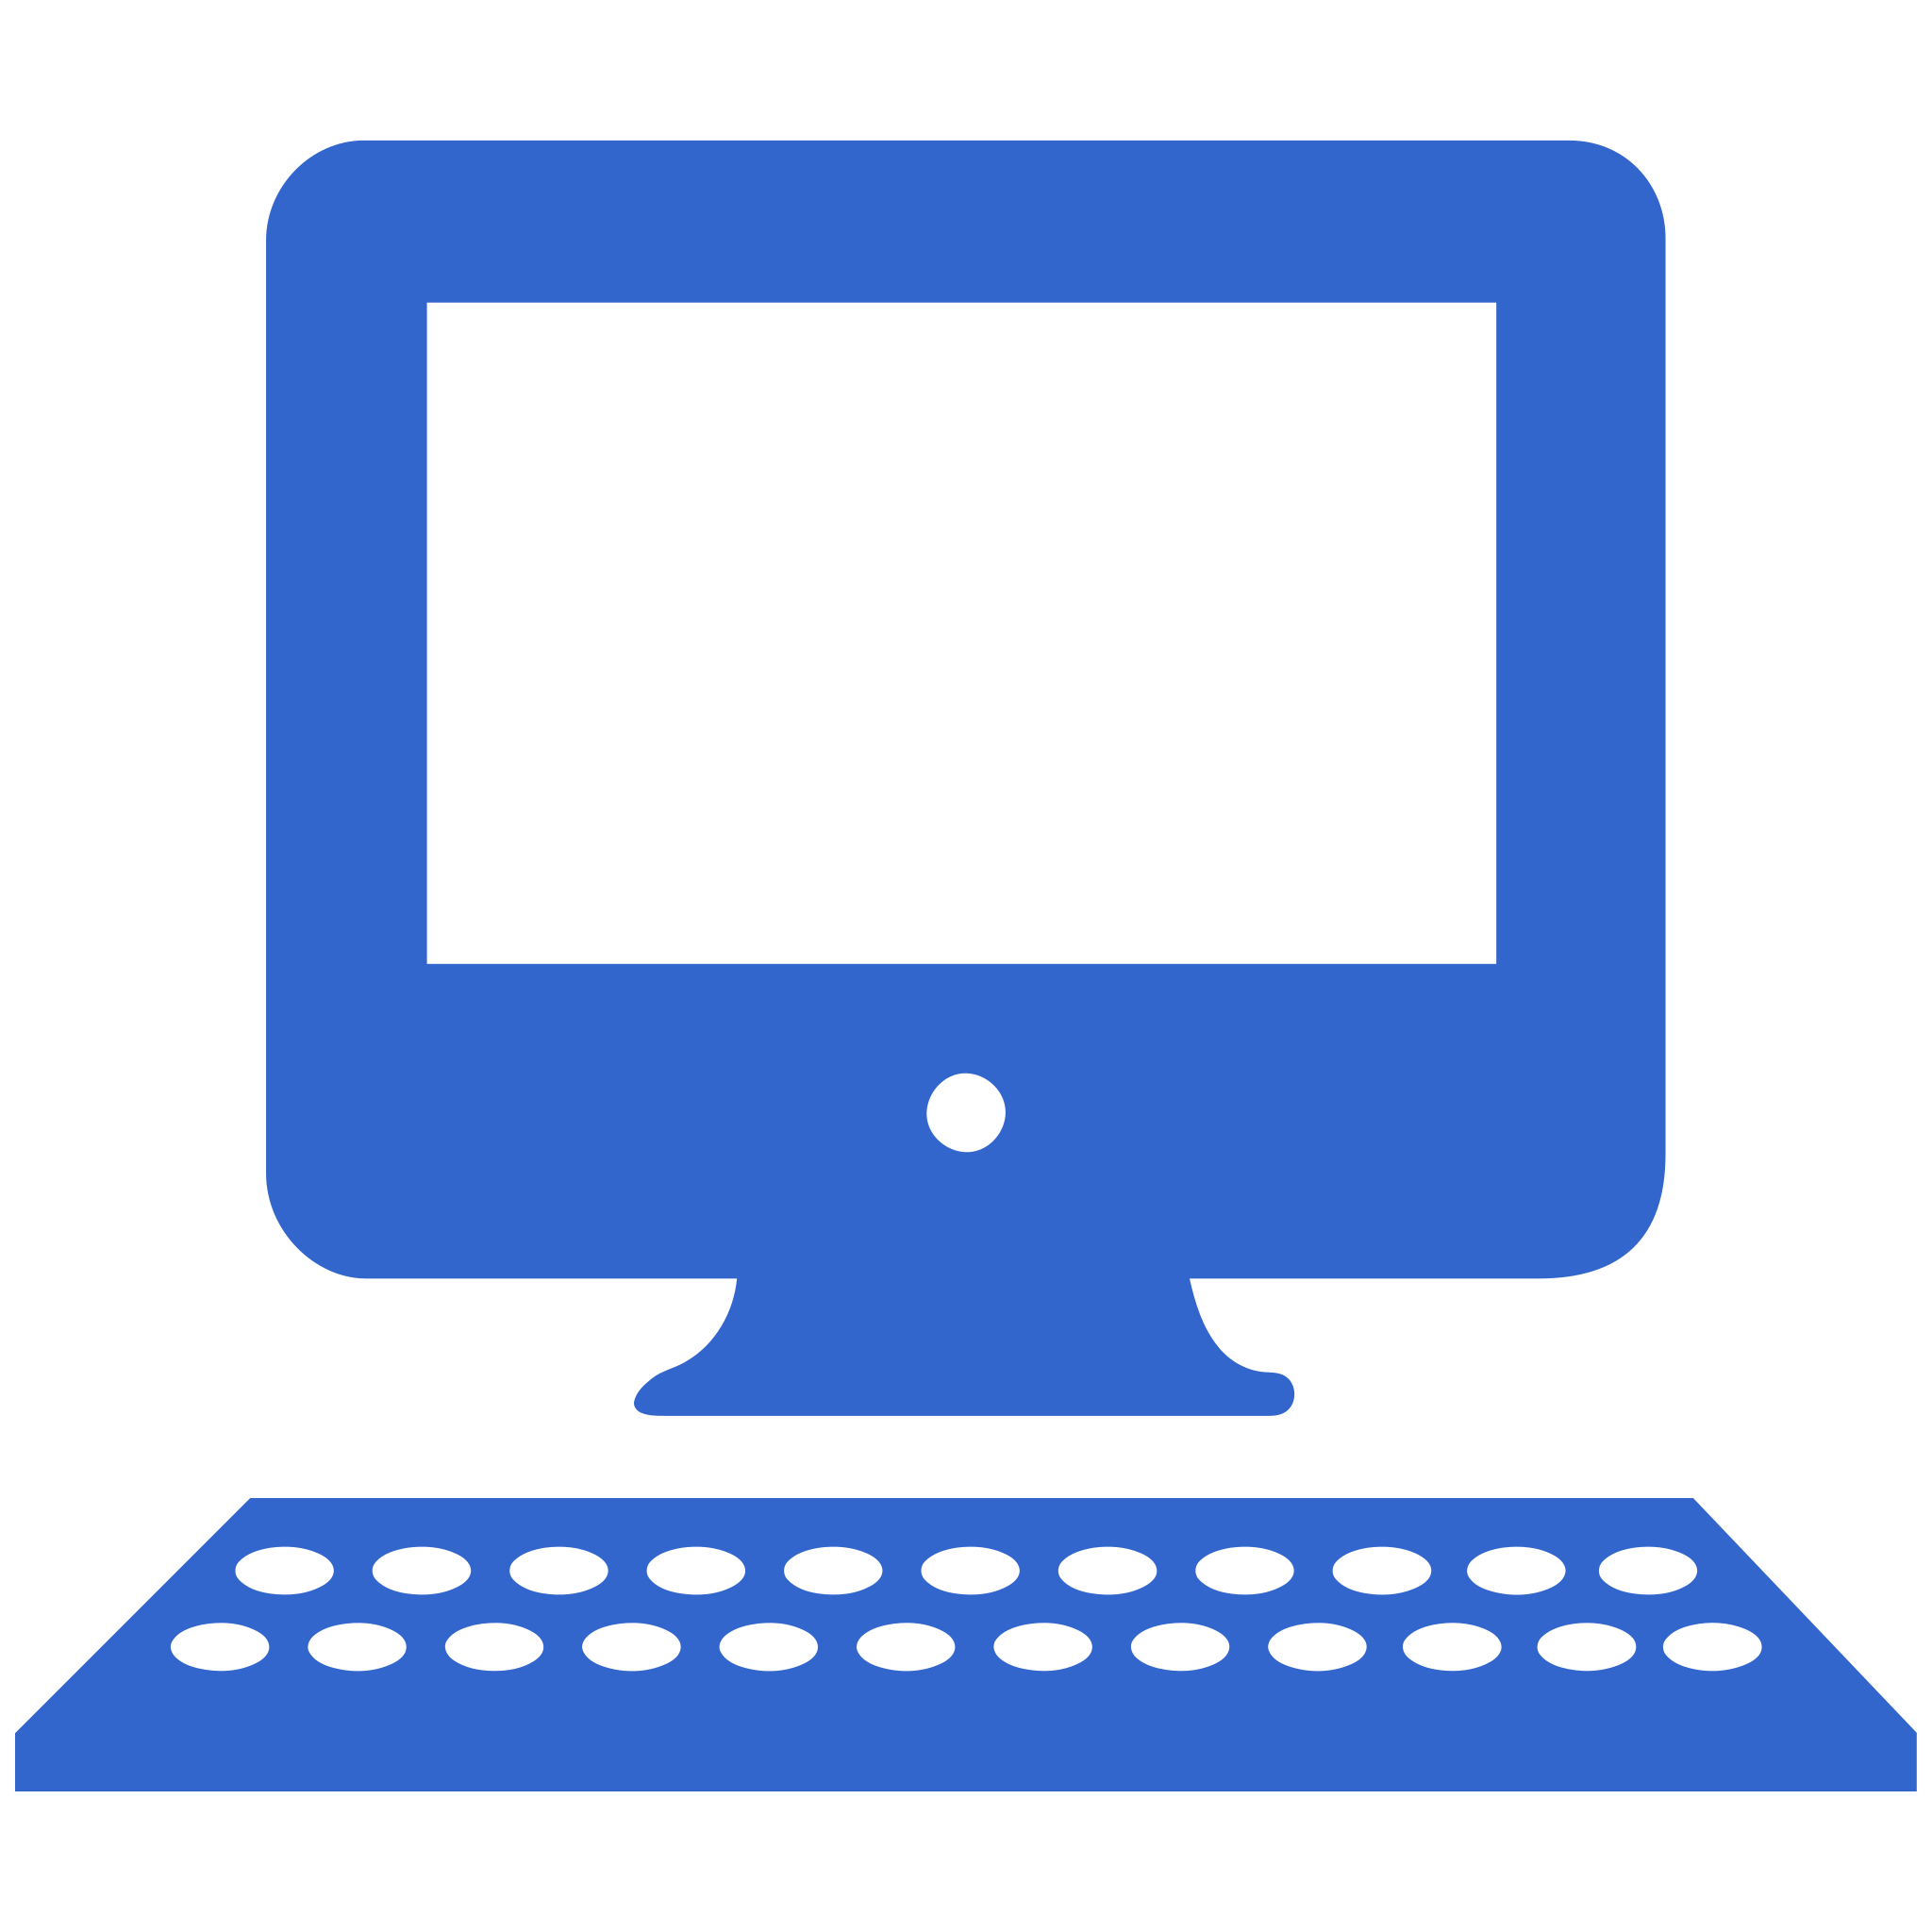 Computer file icon